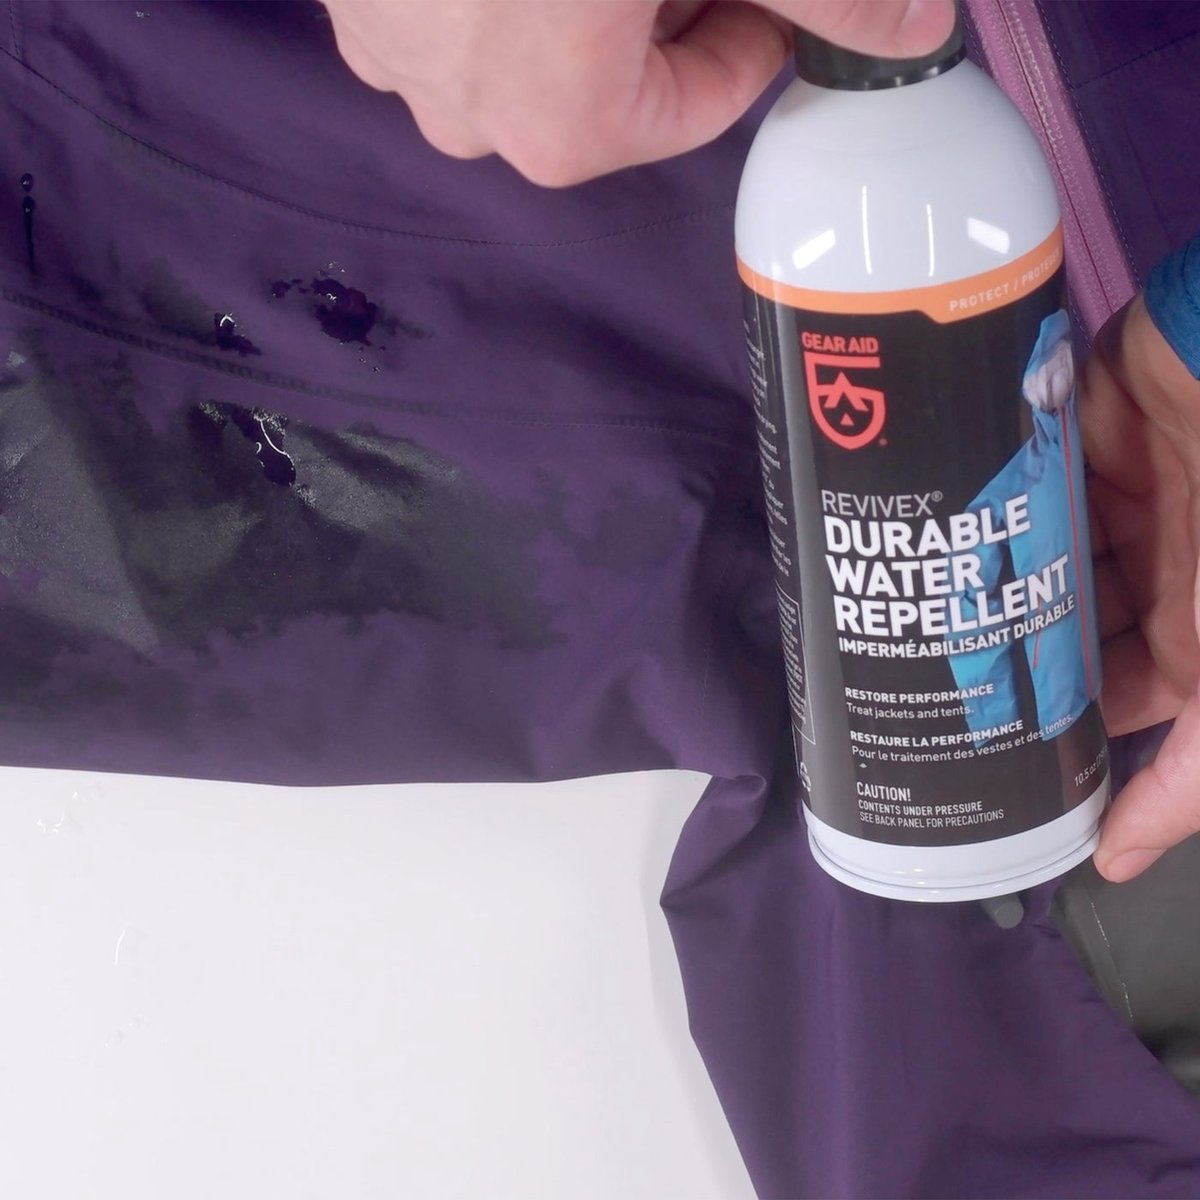 Gear Aid Revivex Durable Water Repellant Spray